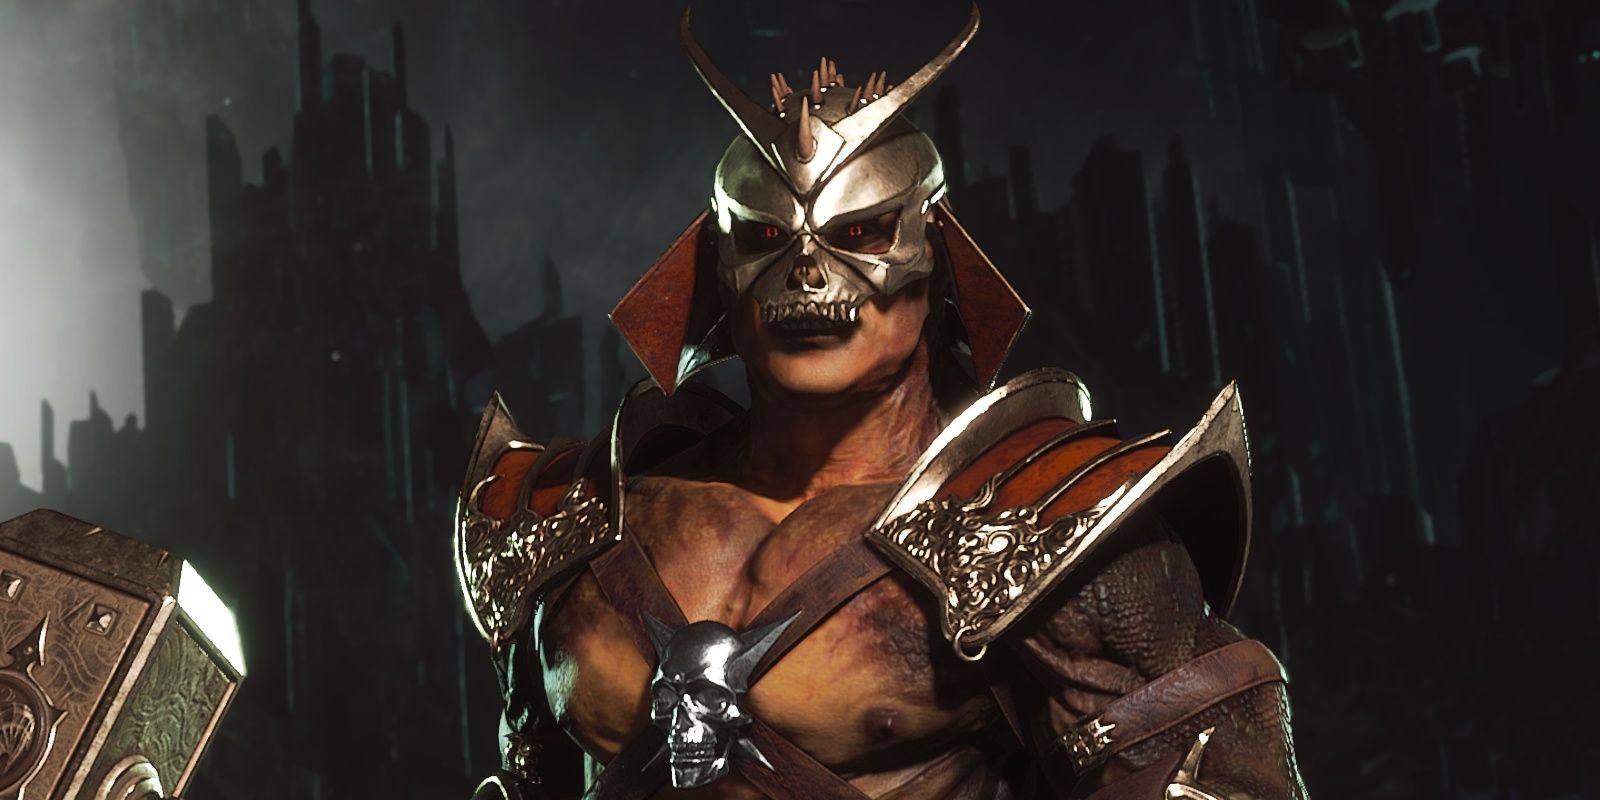 Shao Kahn Mortal Kombat